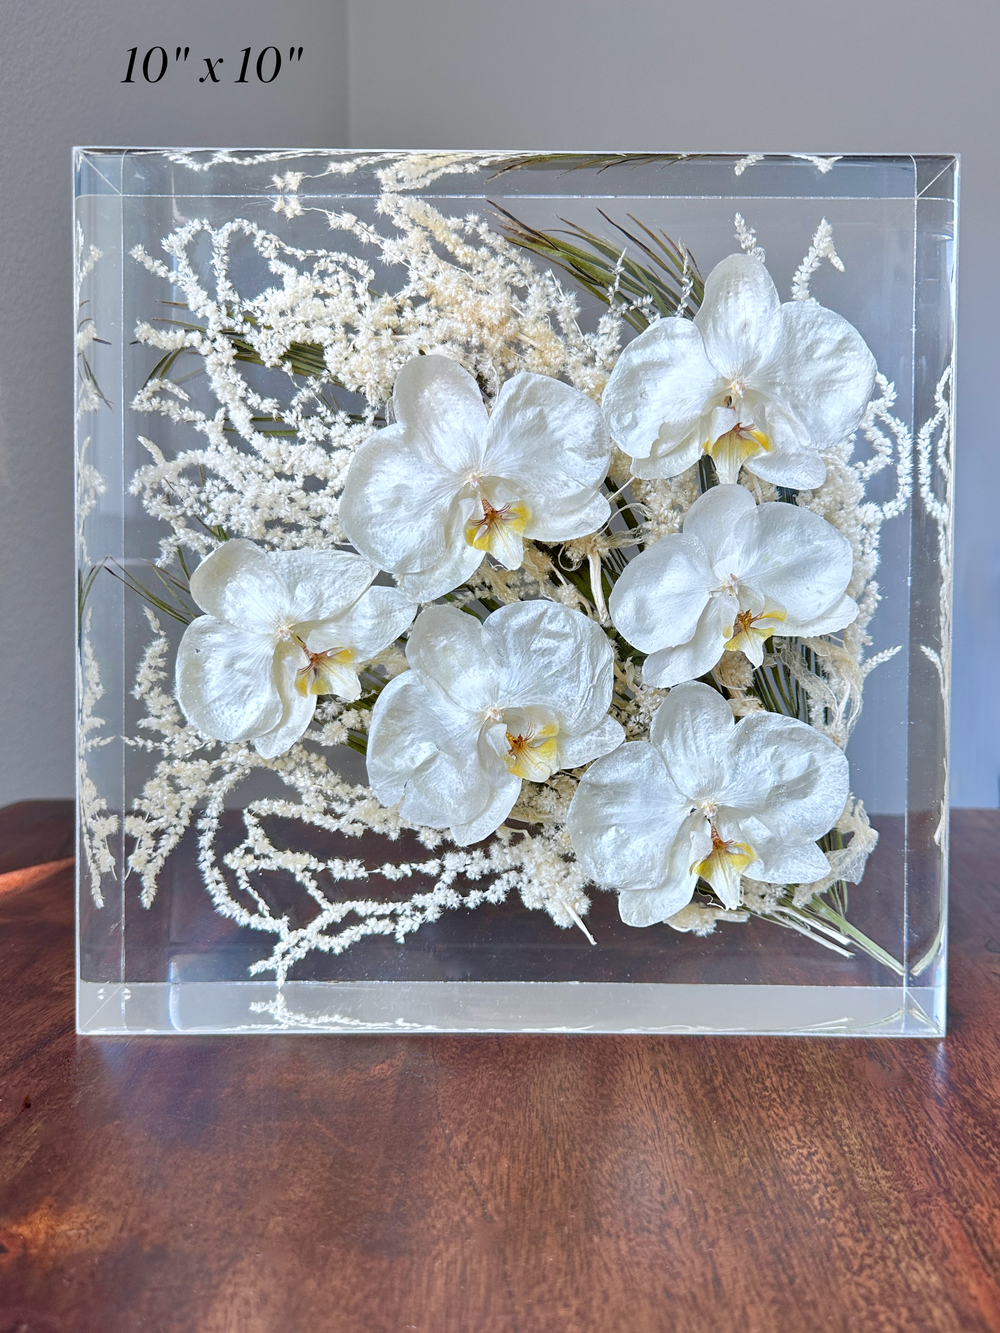 Flower Preservation Resin Artwork — Floral PreserVation and Designs